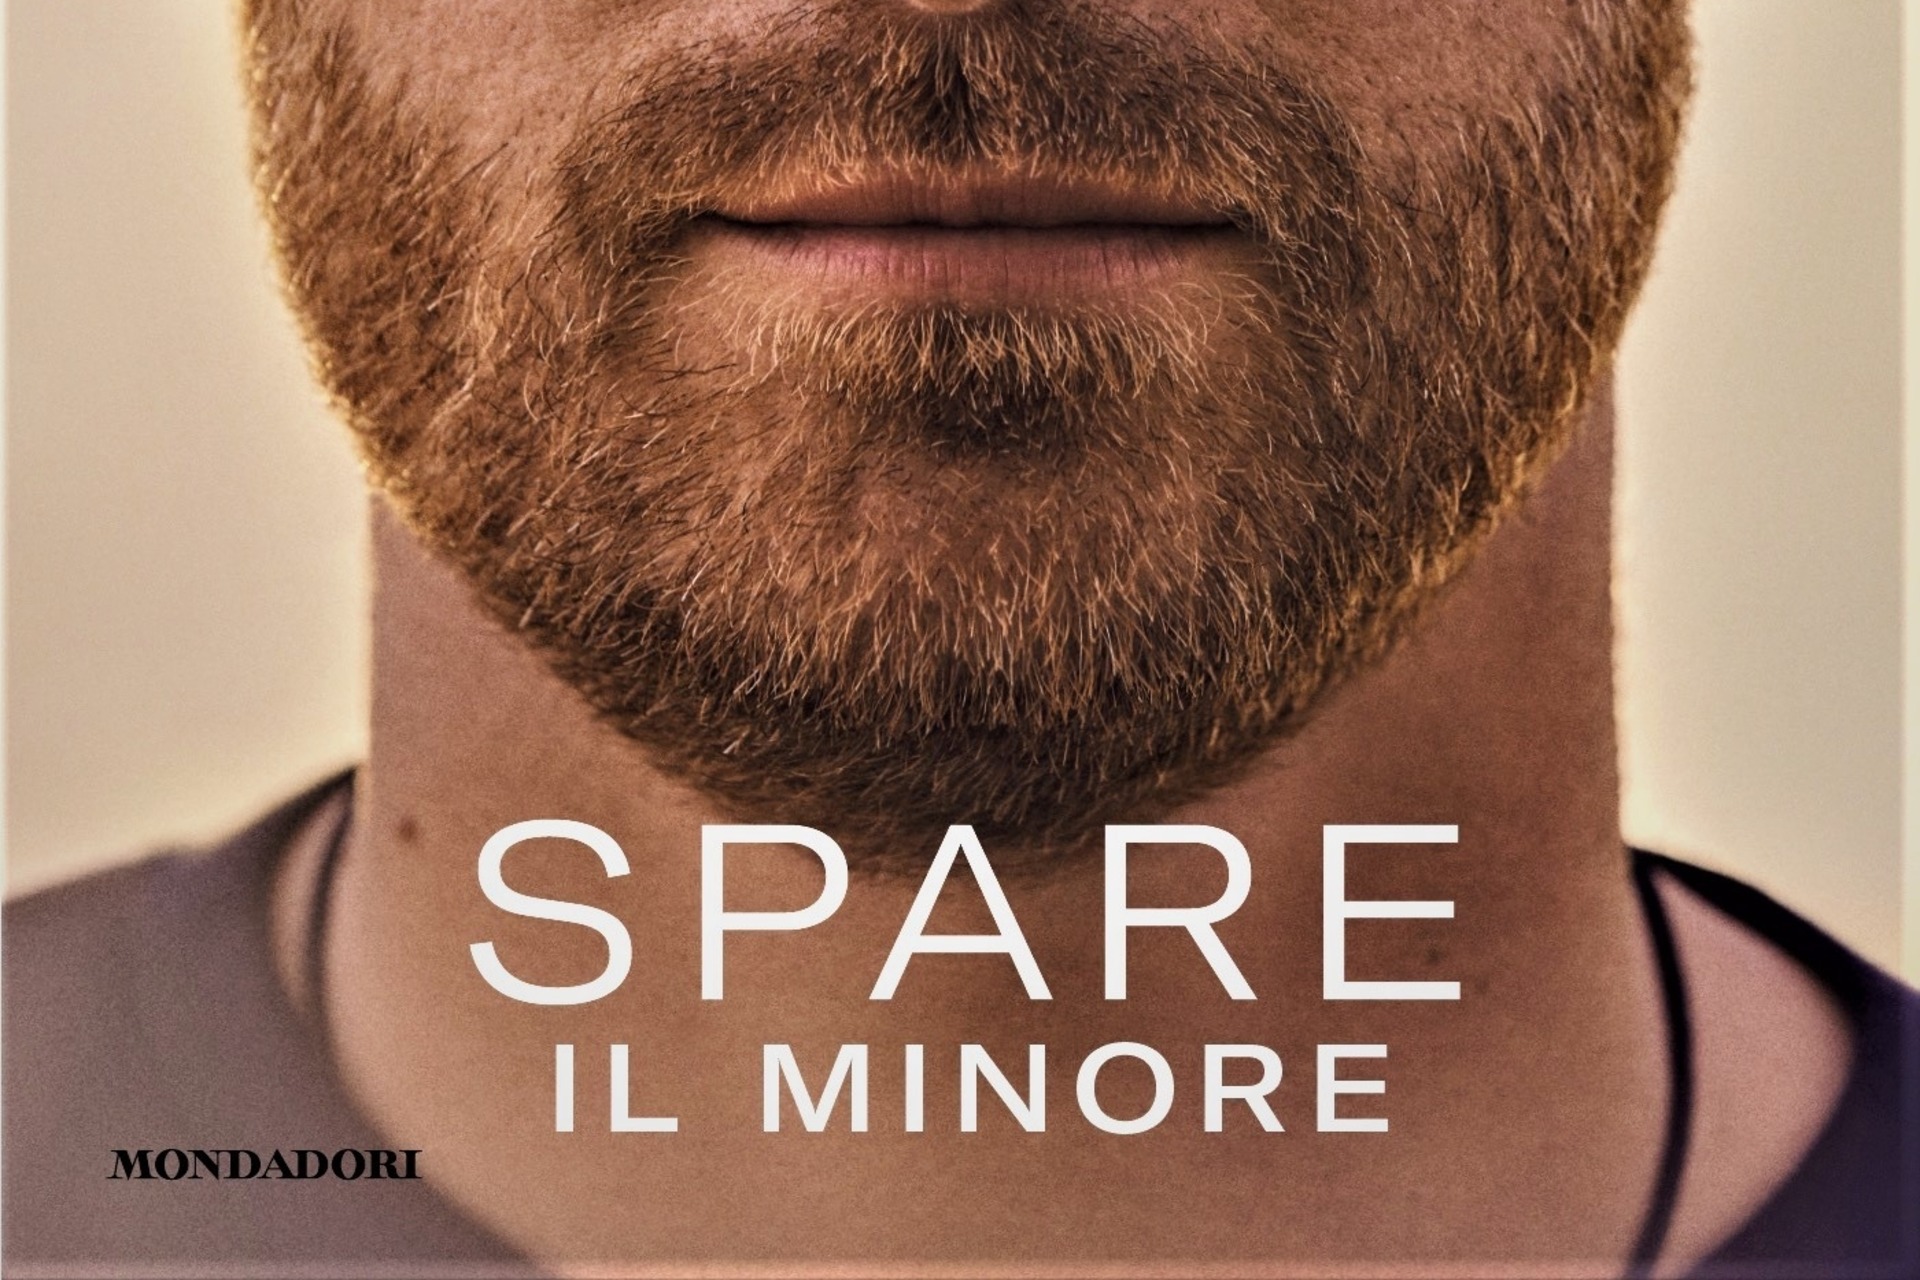 Spare: phần dưới bìa cuốn tự truyện của Hoàng tử Harry, Công tước xứ Sussex, bản tiếng Ý do Mondadori xuất bản với tựa đề "Spare, il minor"